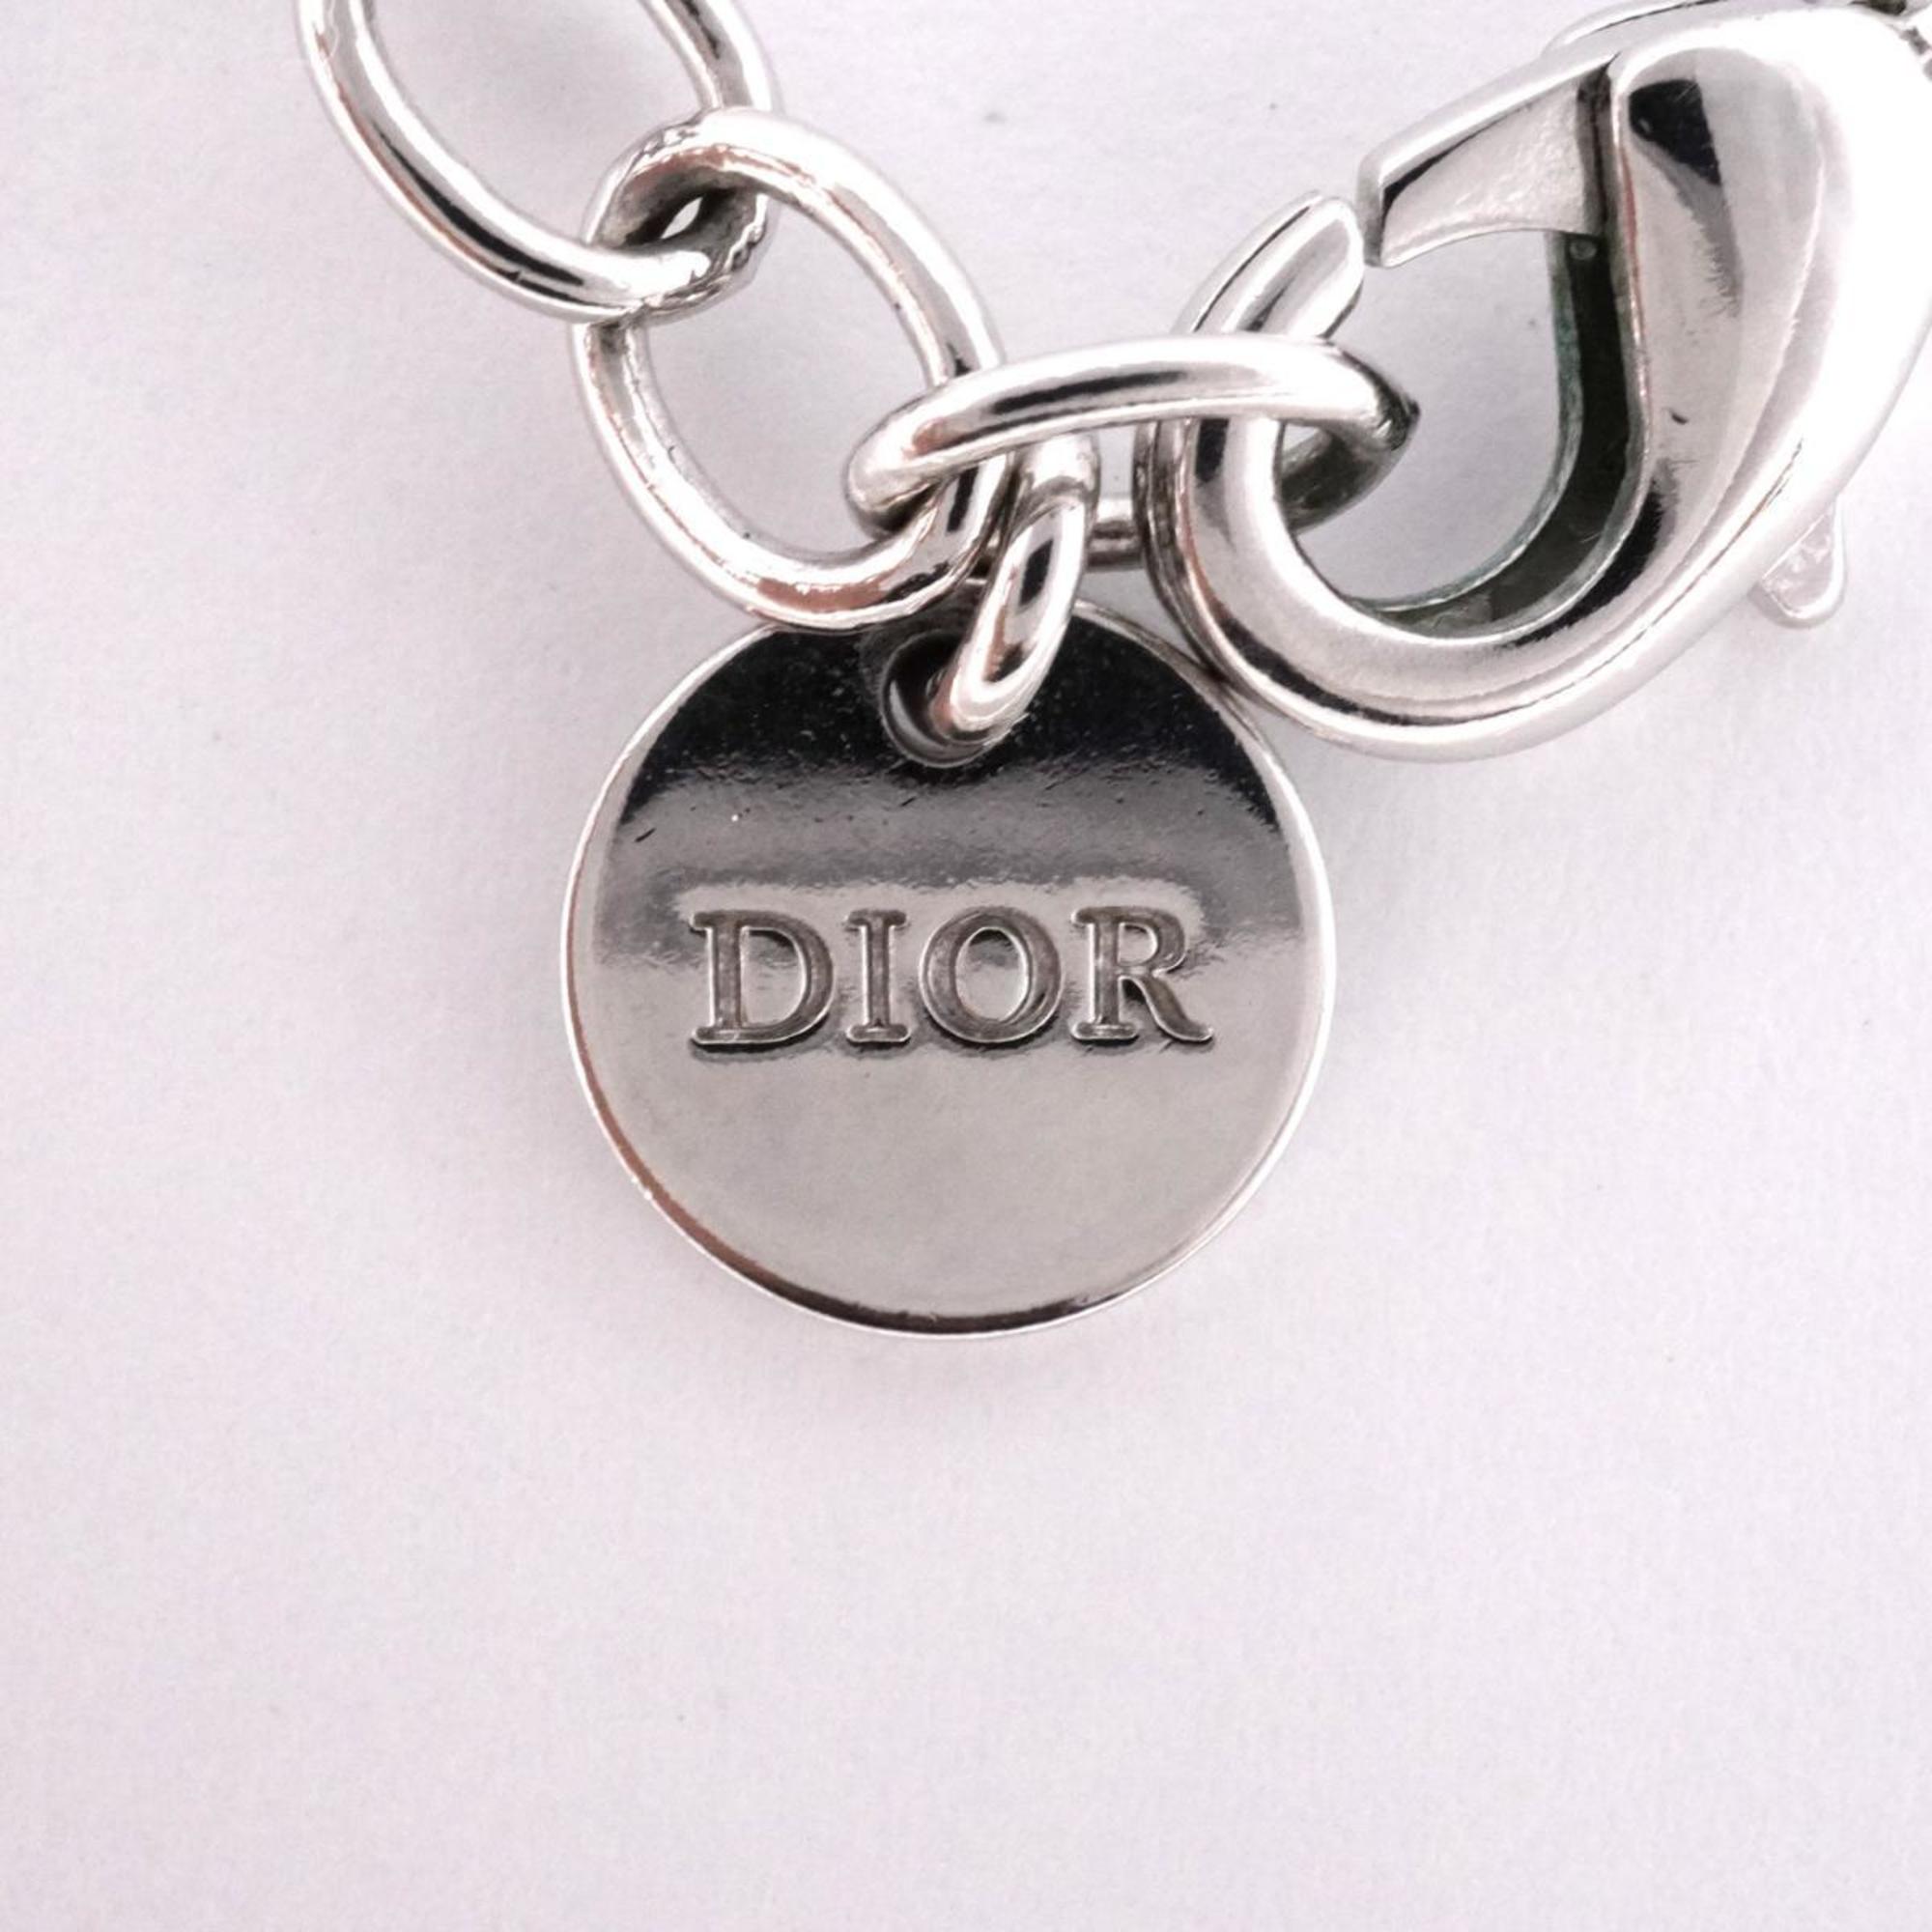 クリスチャン・ディオール(Christian Dior) クリスチャンディオール ネックレス ディオール ラインストーン メタル素材 シルバー  レディース